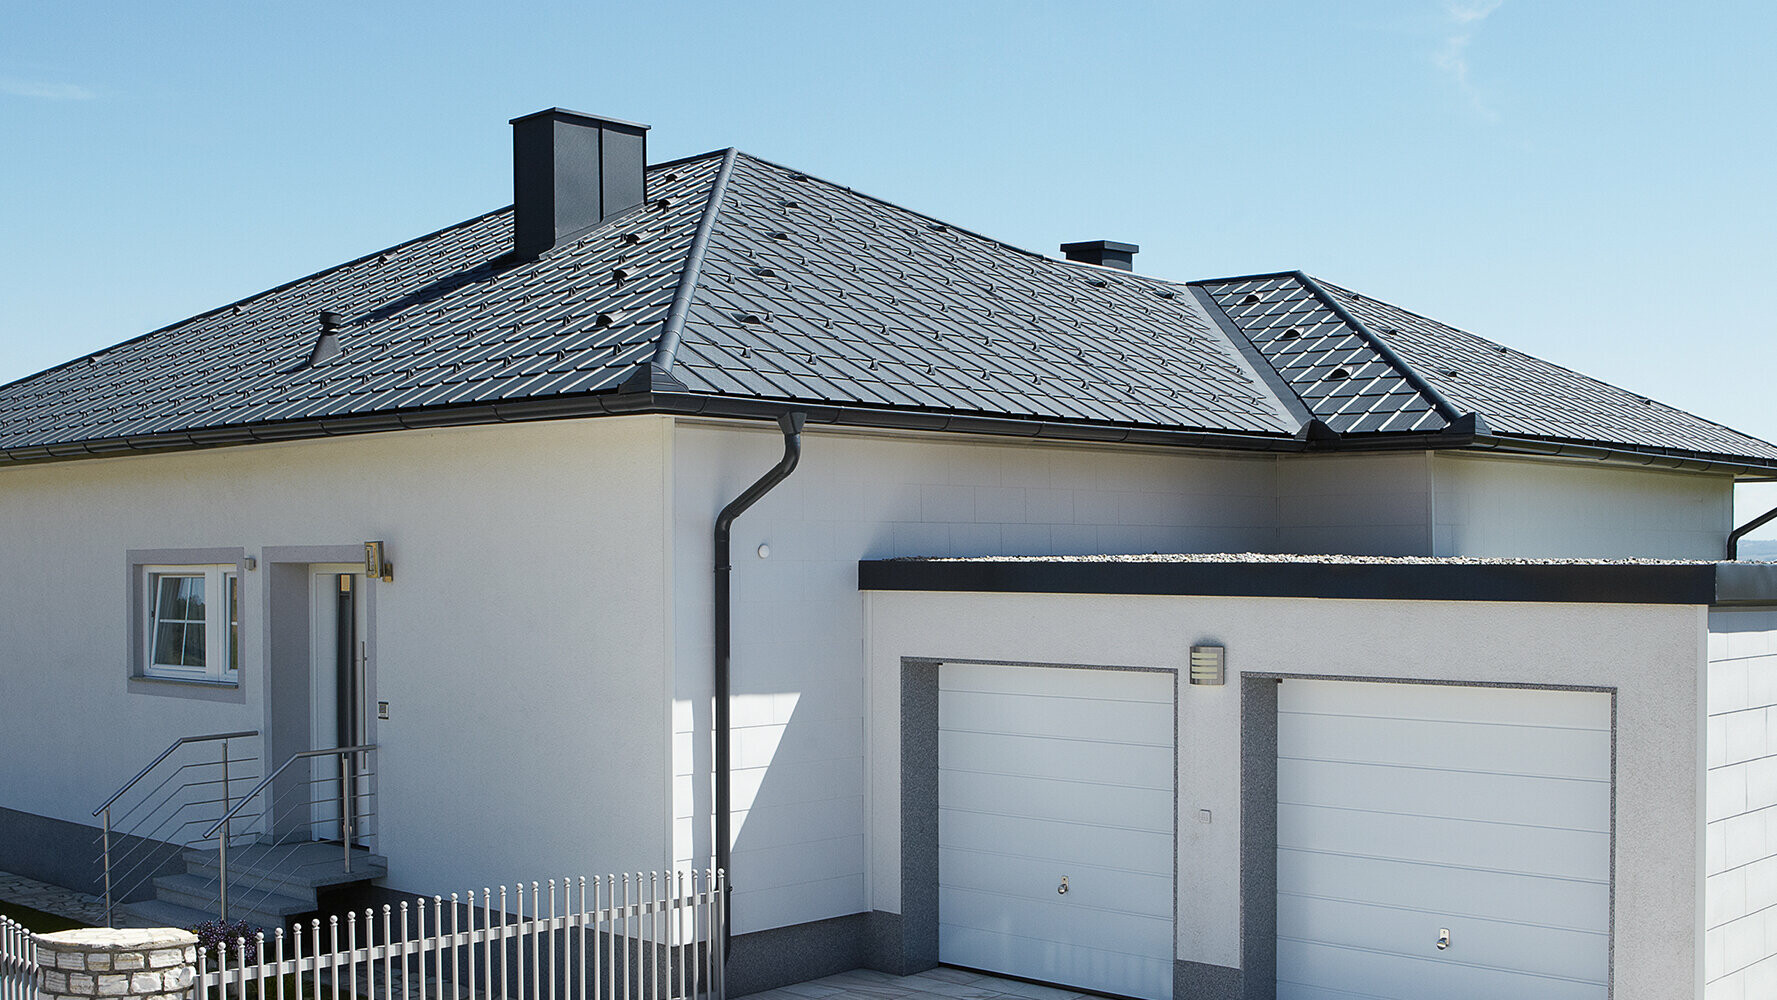 Sanace bungalovu s valbovou střechou pokrytou střešními panely PREFA v antracitové barvě. Vedle stojí dvojitá garáž.